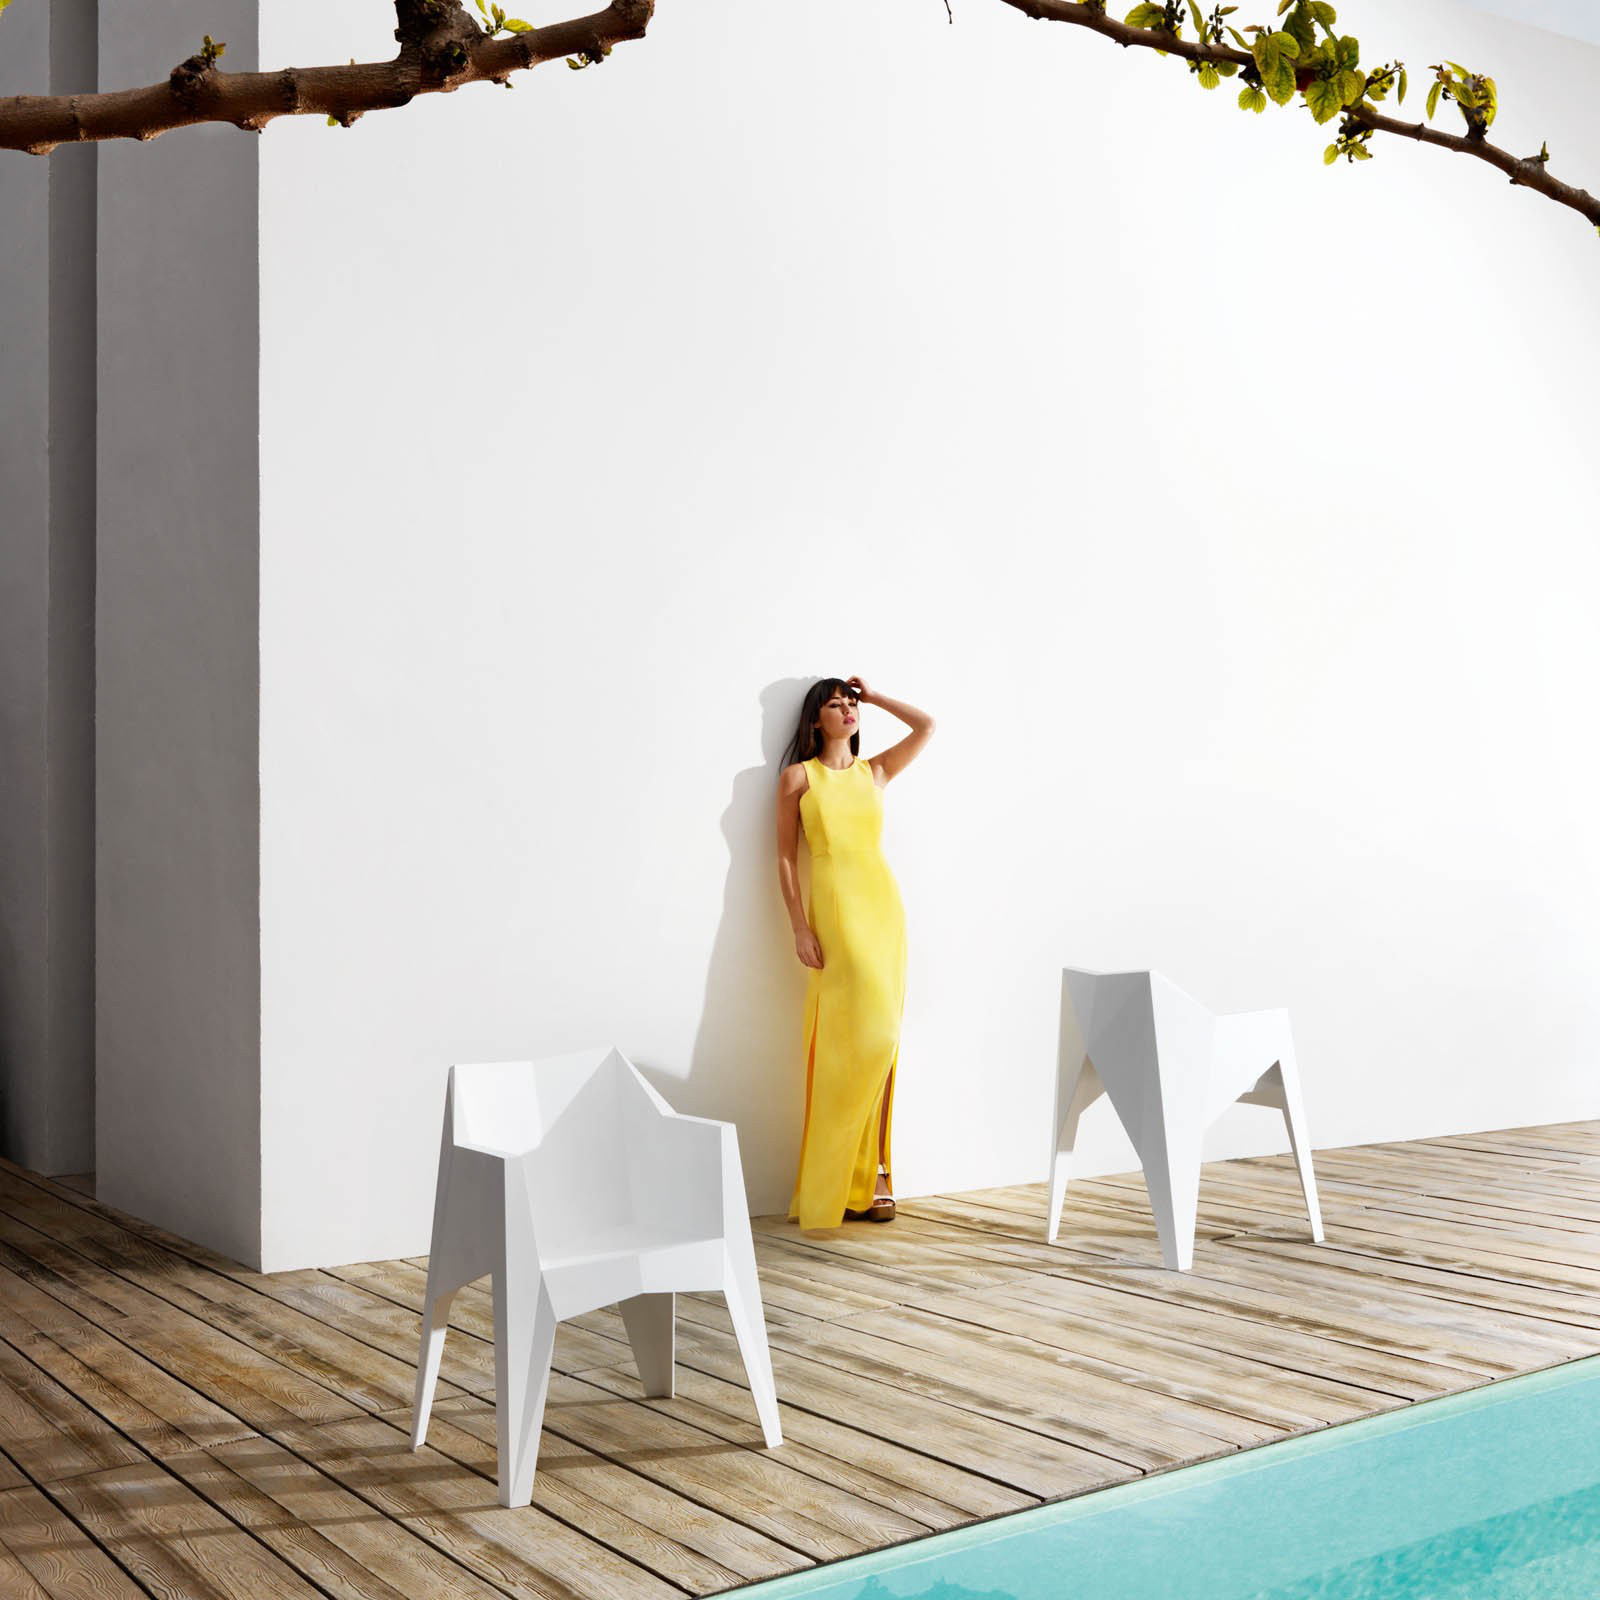 A futurisztikus hatást keltő kerti székeket napjaink egyik legsokoldalúbb és legtöbbet foglalkoztatott dizájnere, Karim Rashid tervezte.Az egymásra rakható 'Voxel' székek fehér, szürke, piros, sárga és zöld színekben lesznek kaphatóan a piacon.